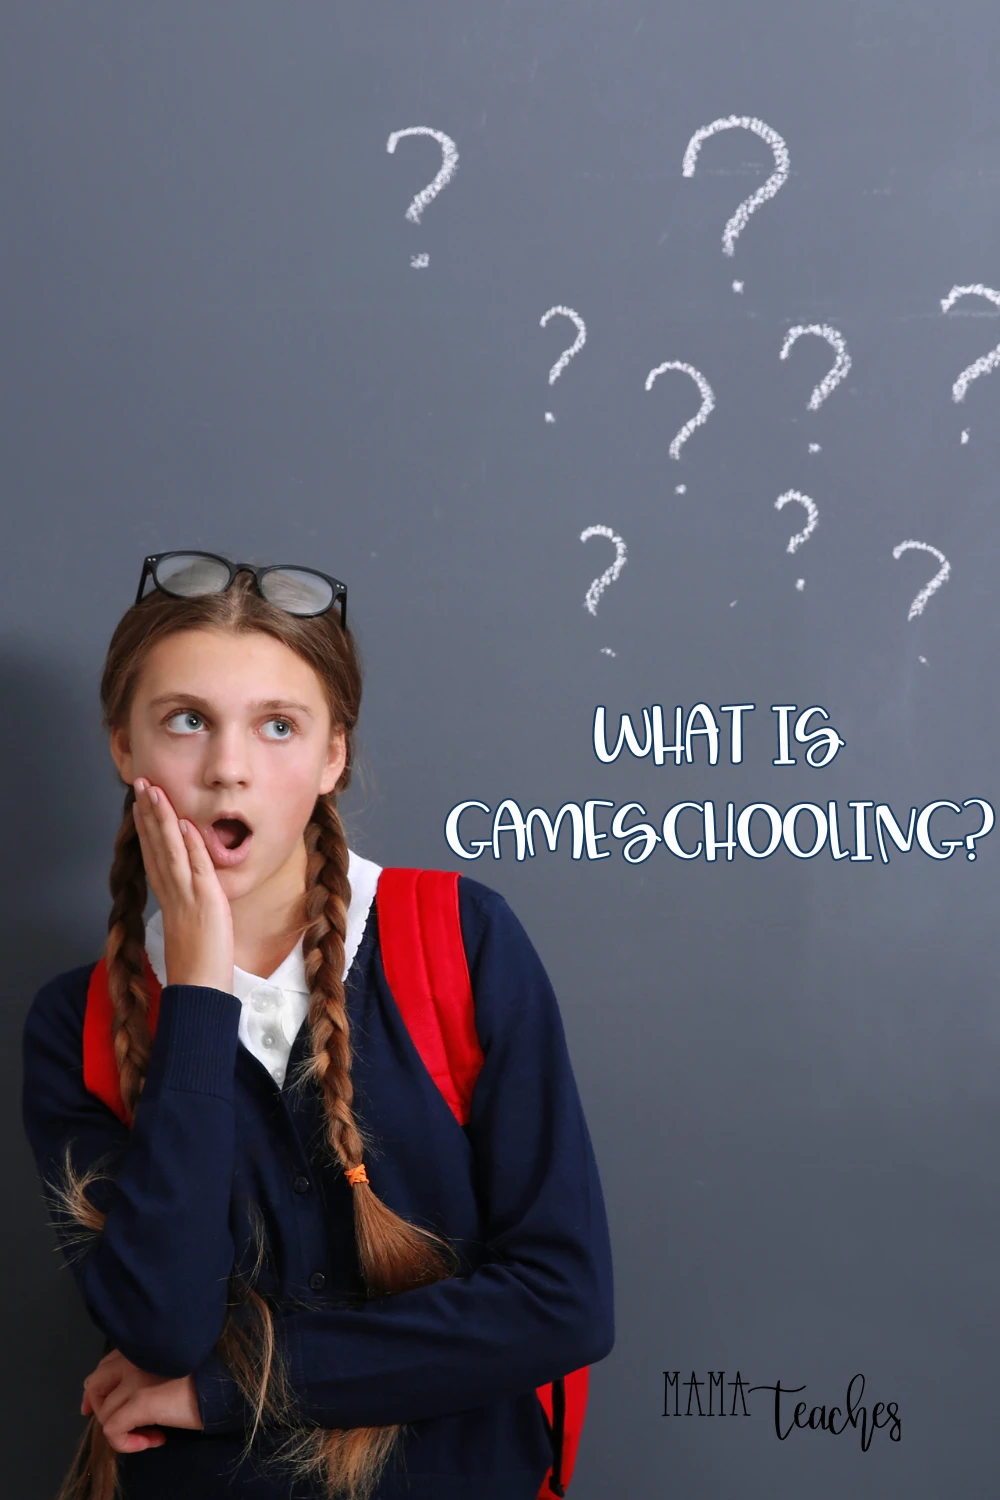 What is Gameschooling?